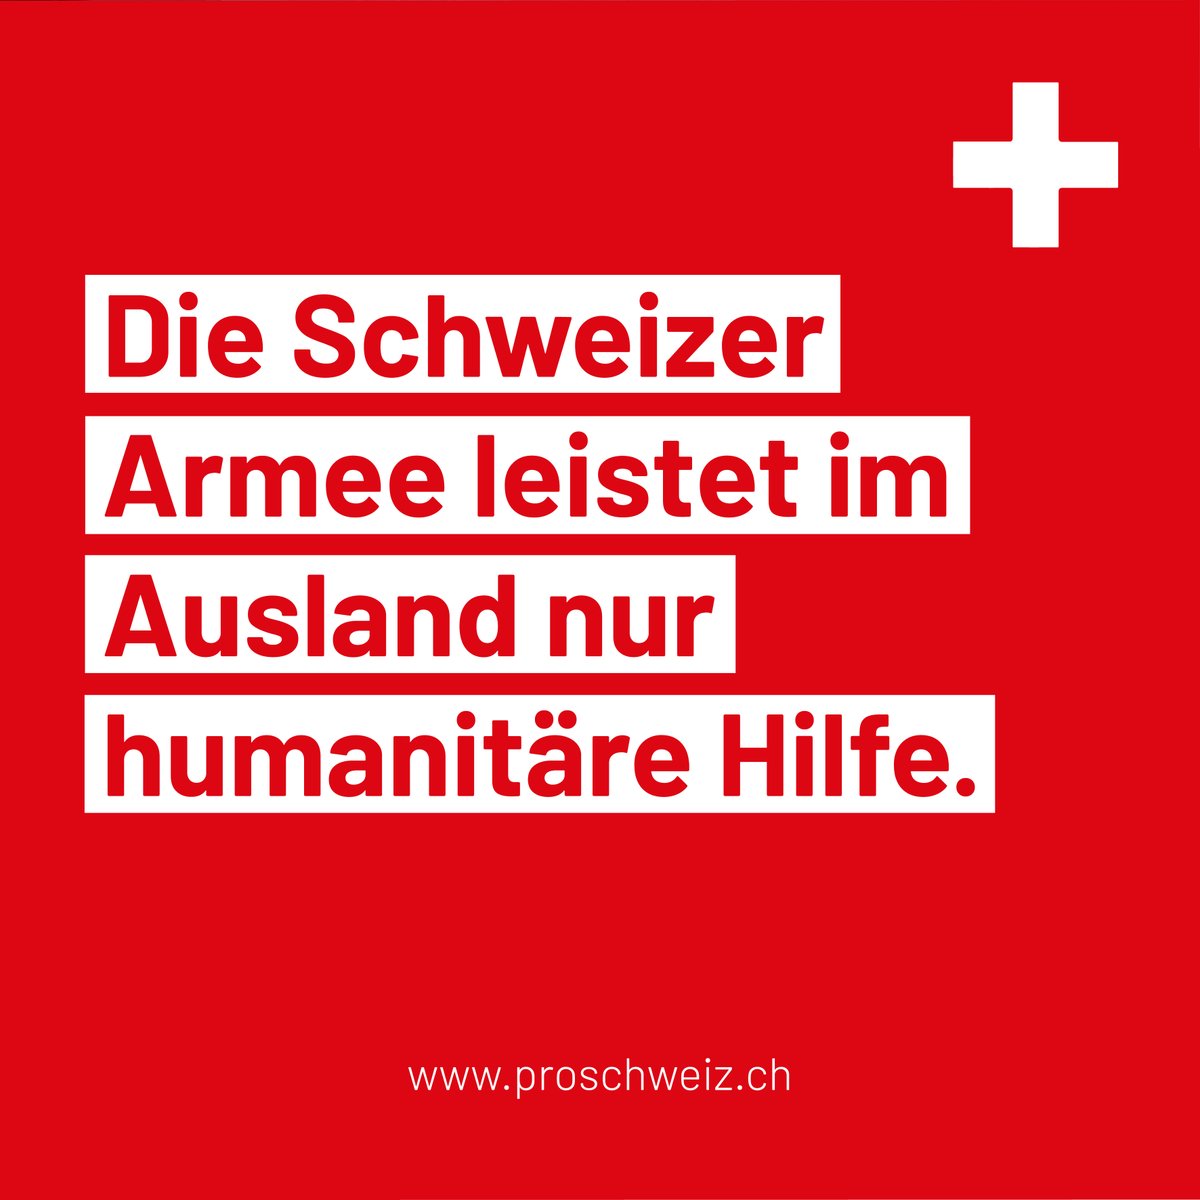 Ein neutrales Land kann keine bewaffneten #Soldaten ins Ausland schicken. Pro Schweiz setzt sich dafür ein, dass die Schweiz weiterhin als neutrales Land wahrgenommen wird.

Werde jetzt Mitglied bei Pro Schweiz. 🇨🇭

#ProSchweiz #ProSuisse #ProSvizzera